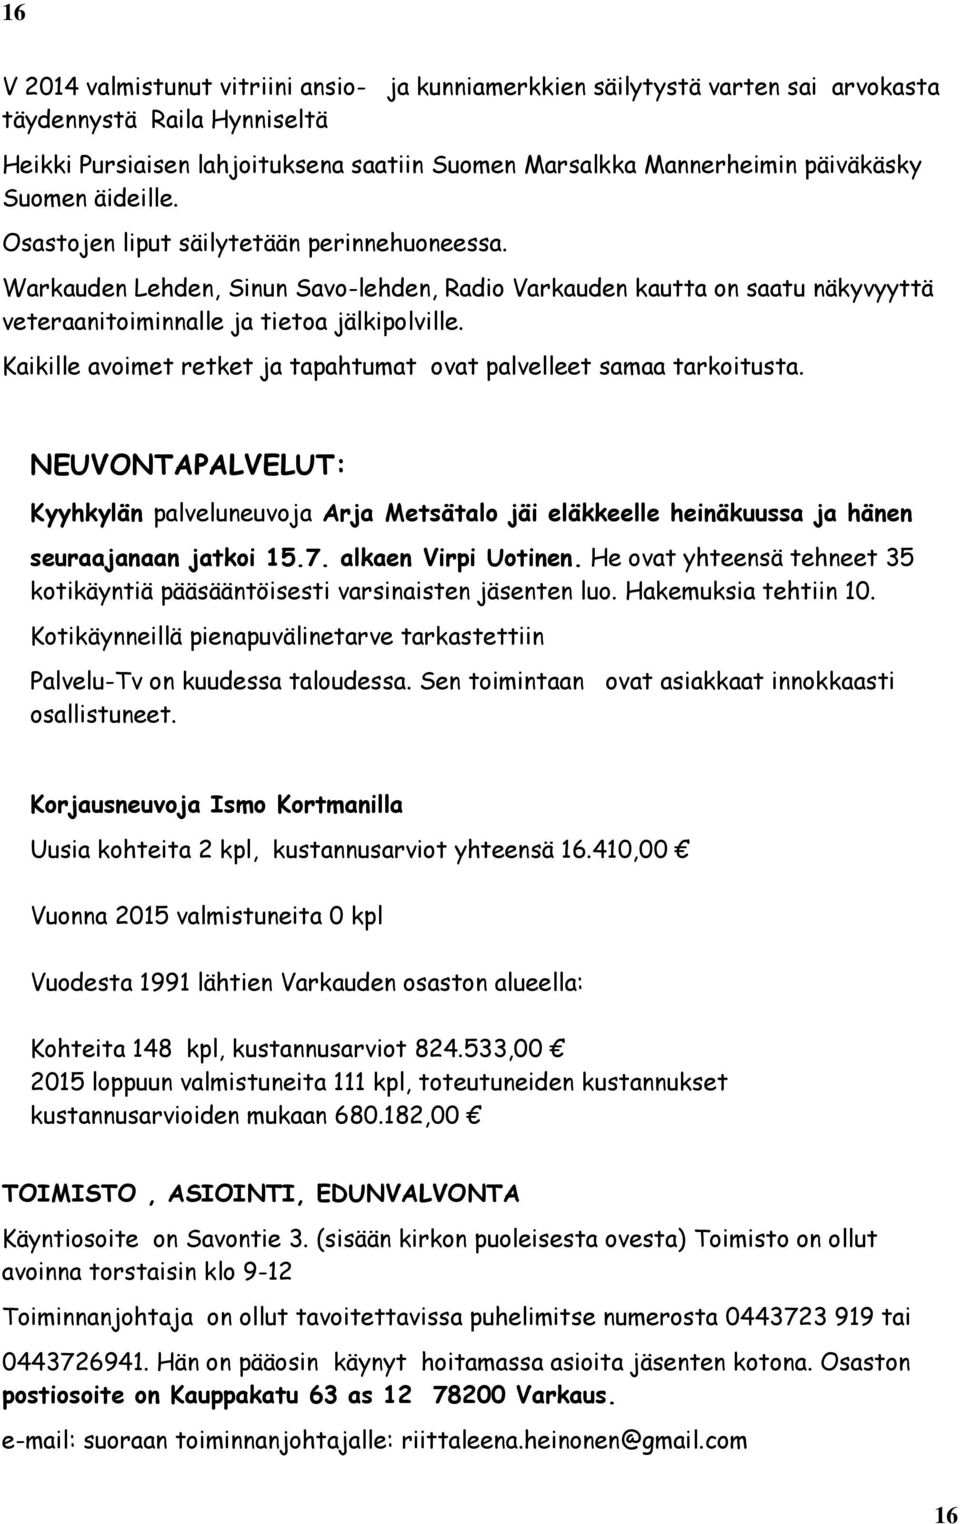 Kaikille avoimet retket ja tapahtumat ovat palvelleet samaa tarkoitusta. NEUVONTAPALVELUT: Kyyhkylän palveluneuvoja Arja Metsätalo jäi eläkkeelle heinäkuussa ja hänen seuraajanaan jatkoi 15.7.